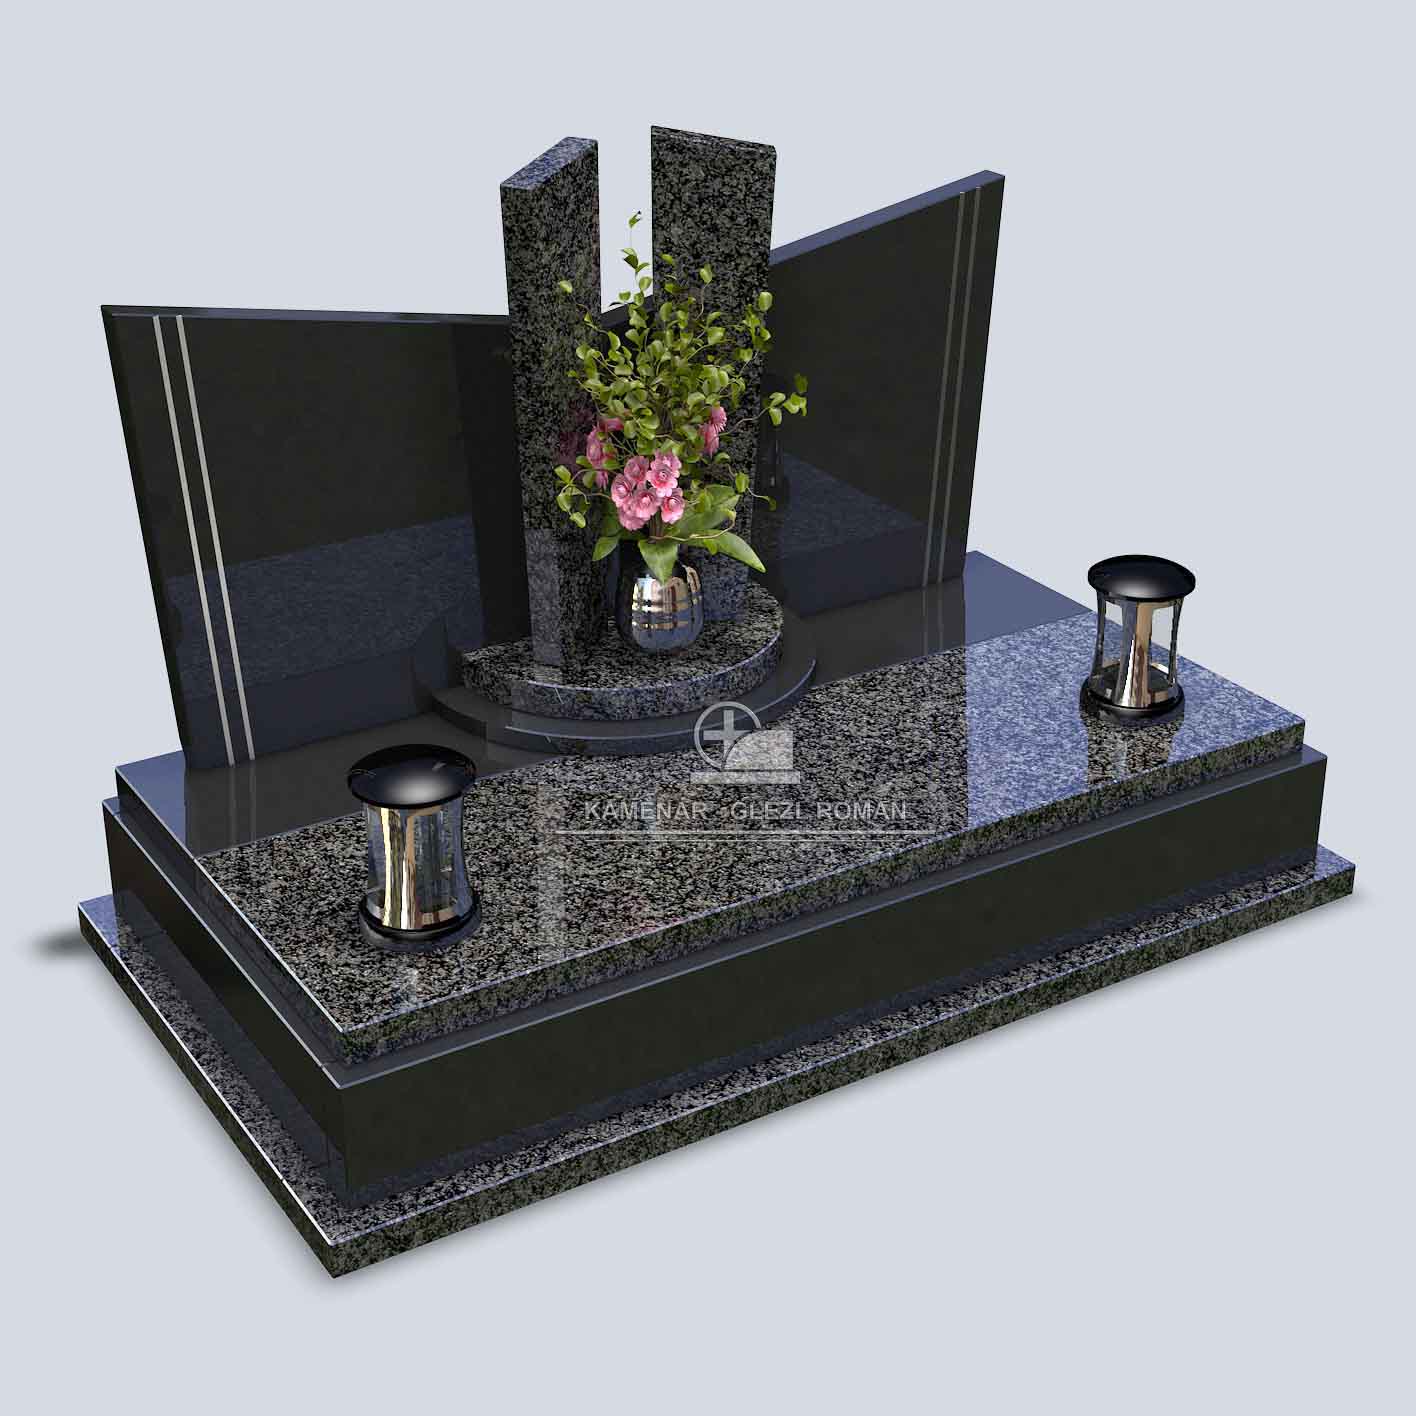 Urnový hrob na šírku zo žuly v tmavočiernom prevedení s dvoma svietnikmi a vázou s kvetom